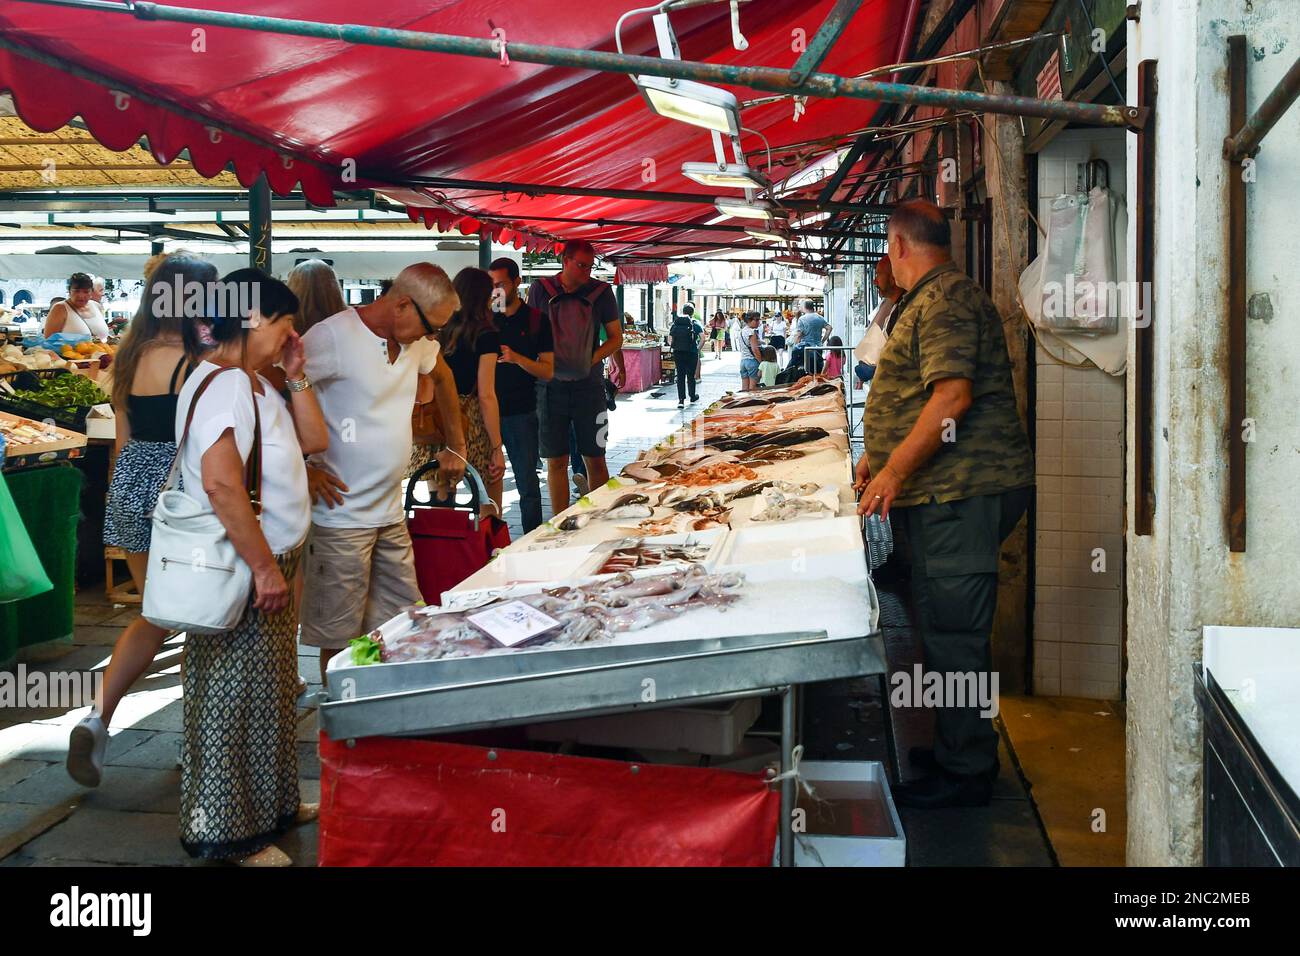 Le persone che acquistano il pescato del giorno presso una bancarella del mercato di Rialto in piazza campo della Pescaria, sestiere di San Polo, Venezia, Veneto, Italia Foto Stock